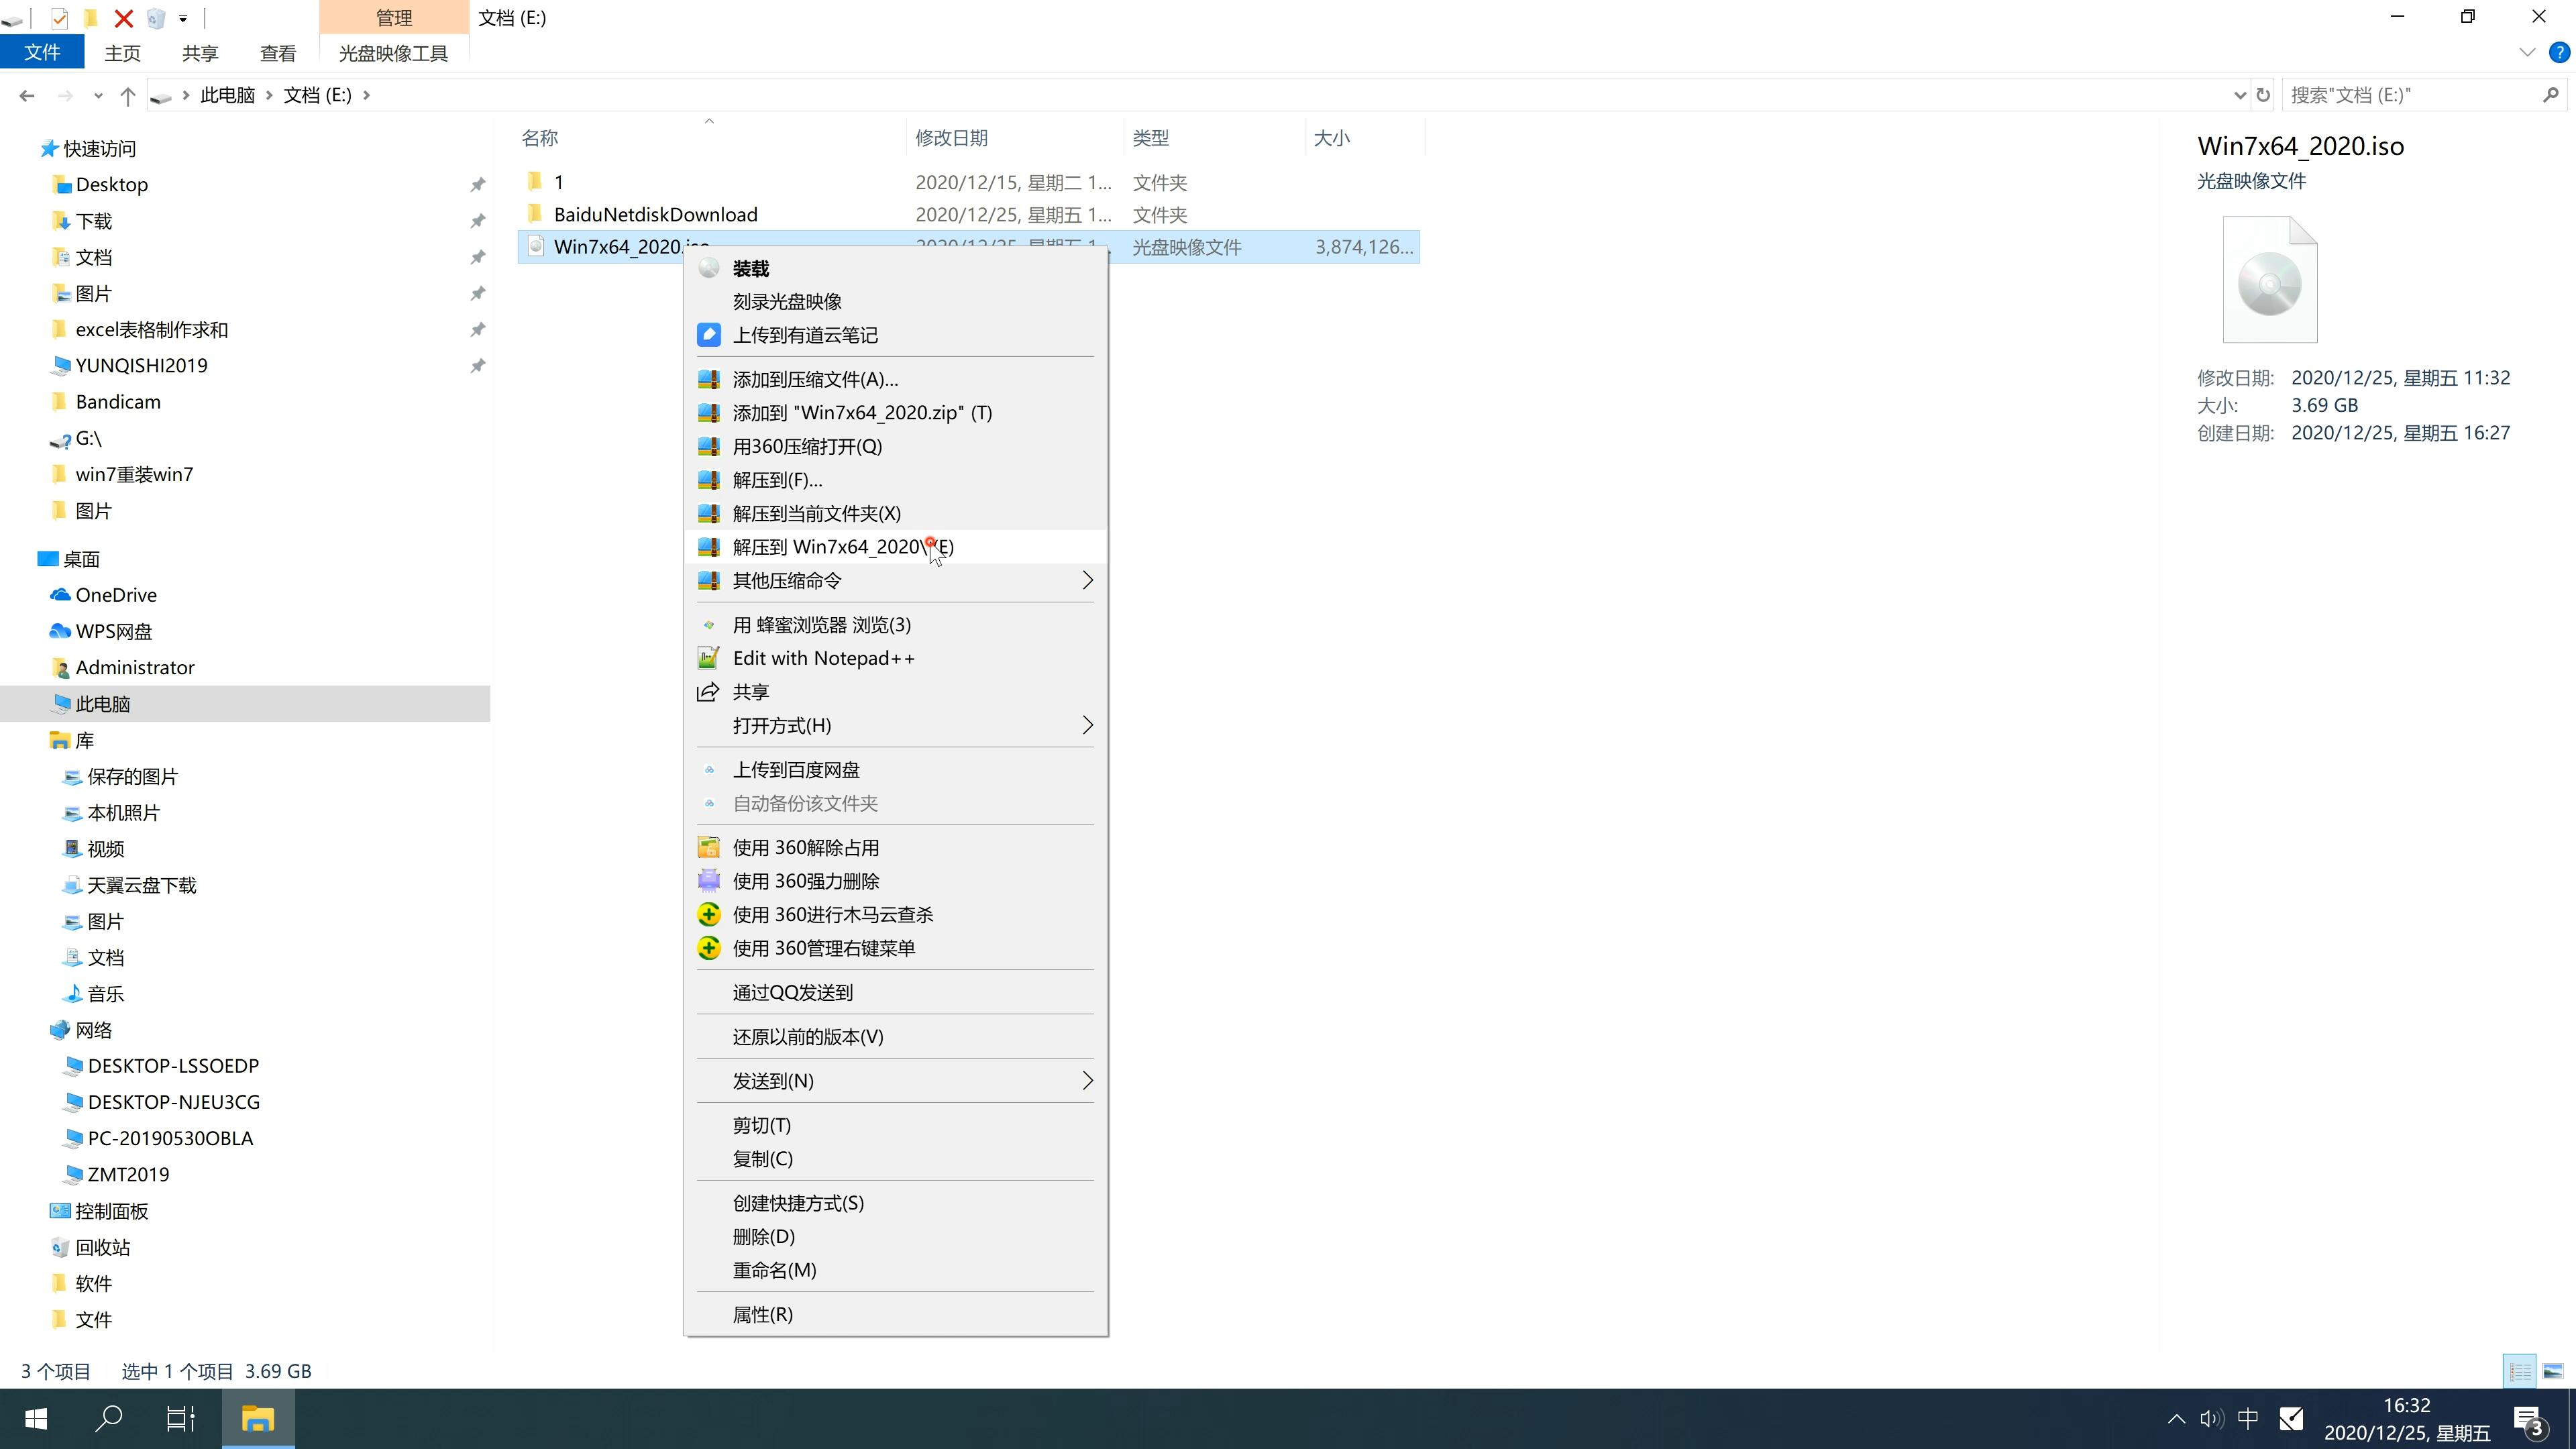 新宏基笔记本专用系统  WINDOWS7 X64  旗舰版镜像免费下载 V2021.12(2)